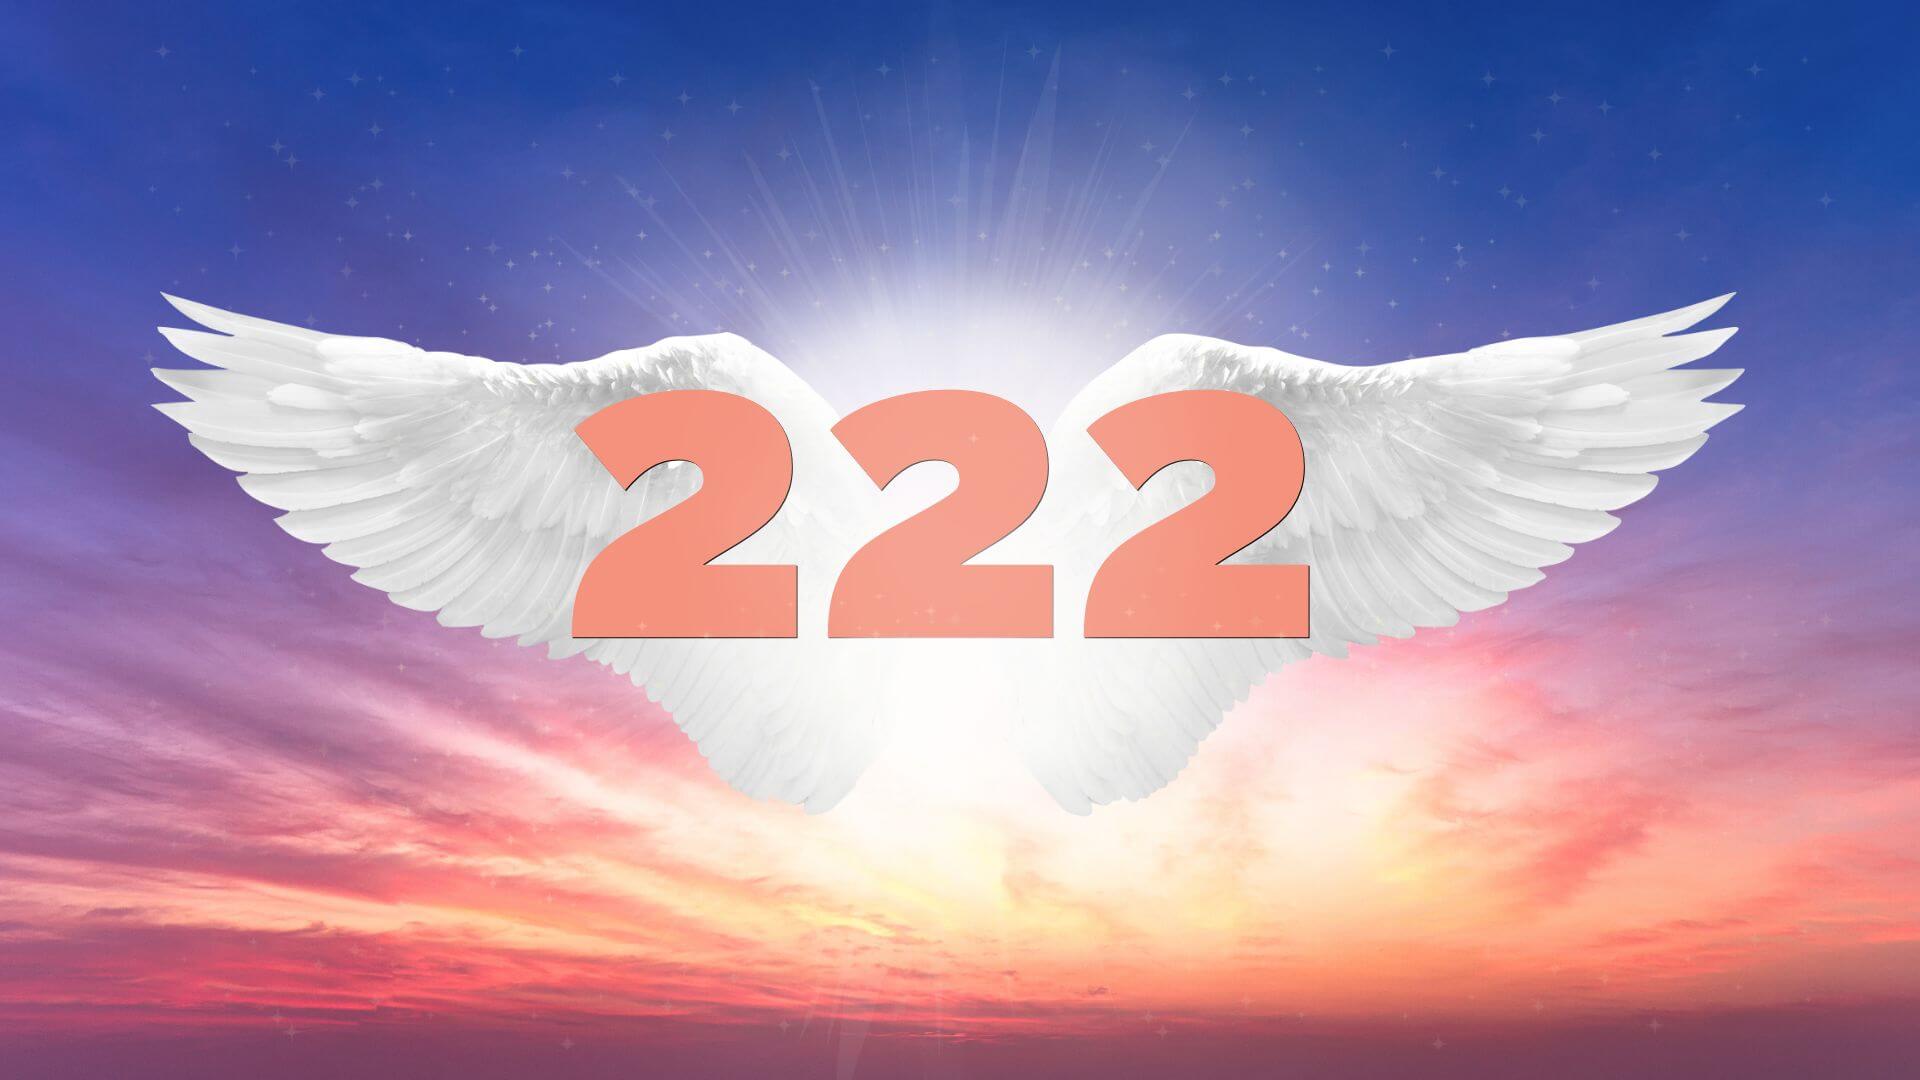 222 Angel Number